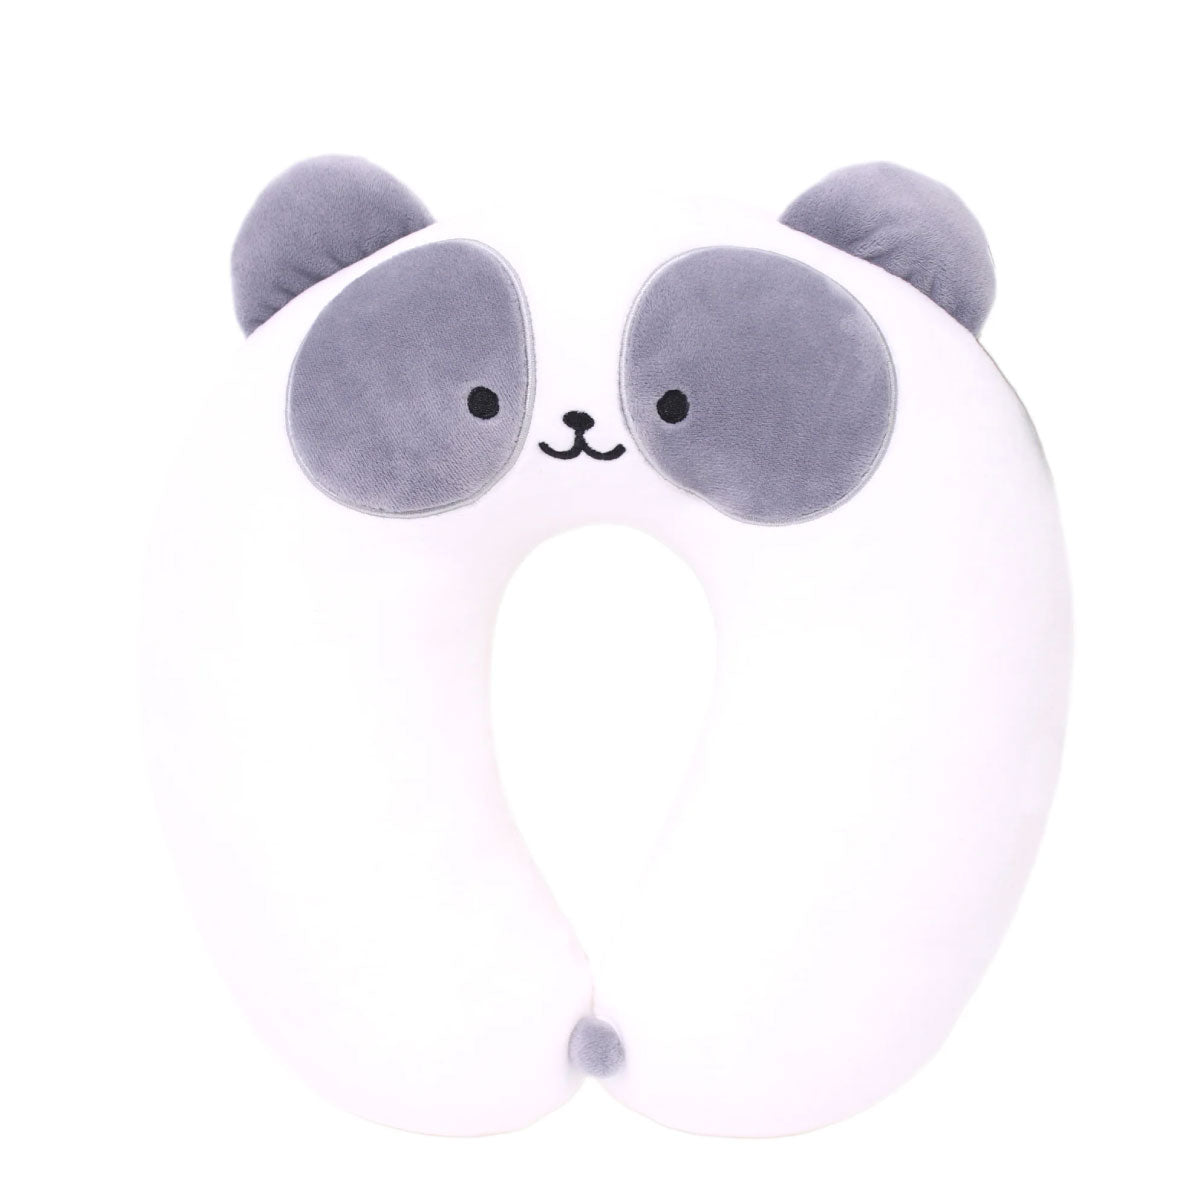 AniRollz Plush Neck Pillows - Panda